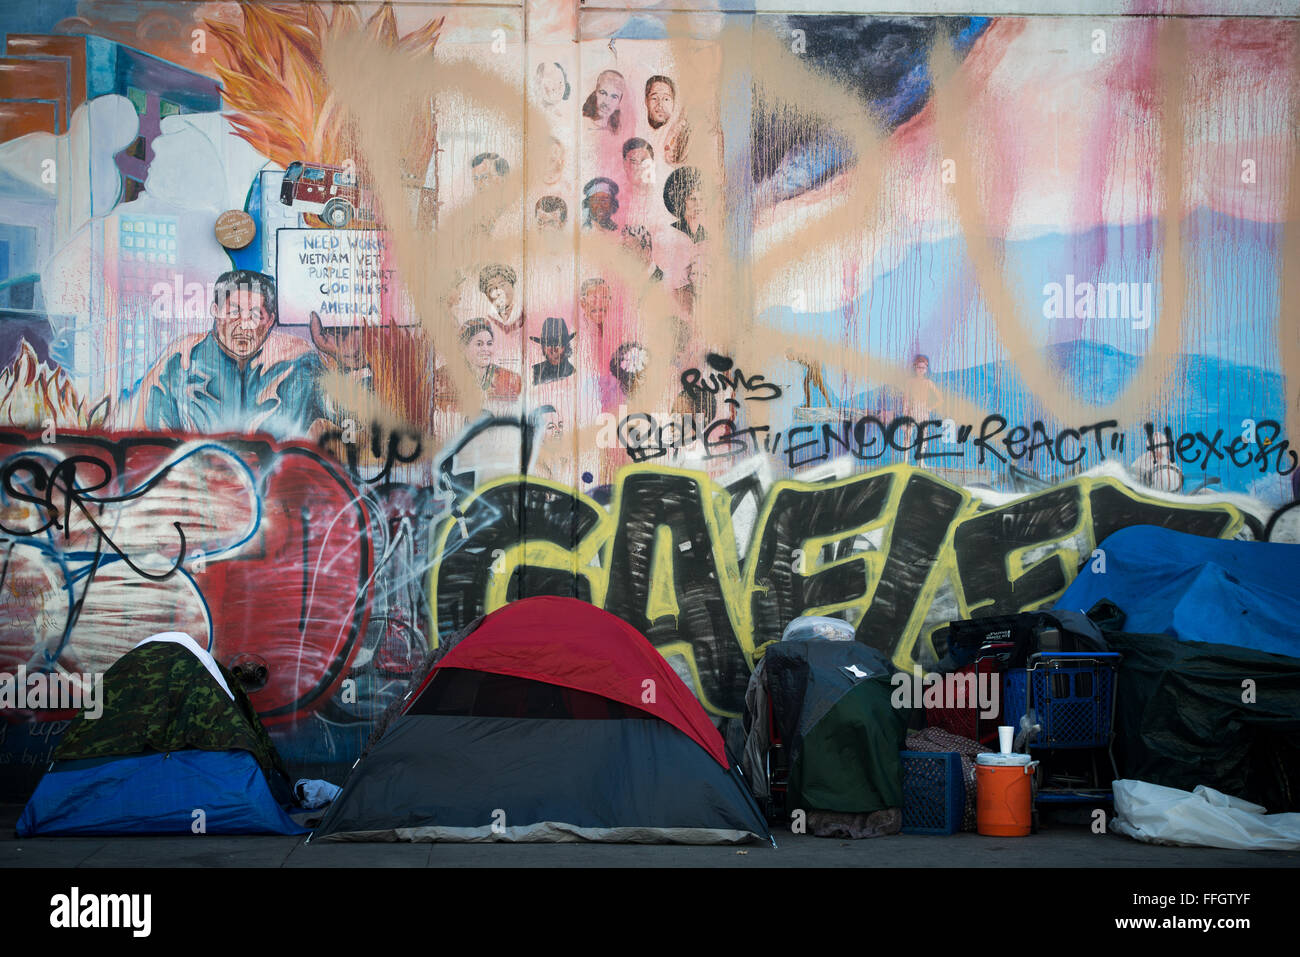 Dietro una linea di aree soggiorno delle persone senza fissa dimora, un murale su un edificio situato su Skid Row rappresenta la cultura della città e include la presenza della costante problema dei senzatetto e la disoccupazione. Foto Stock